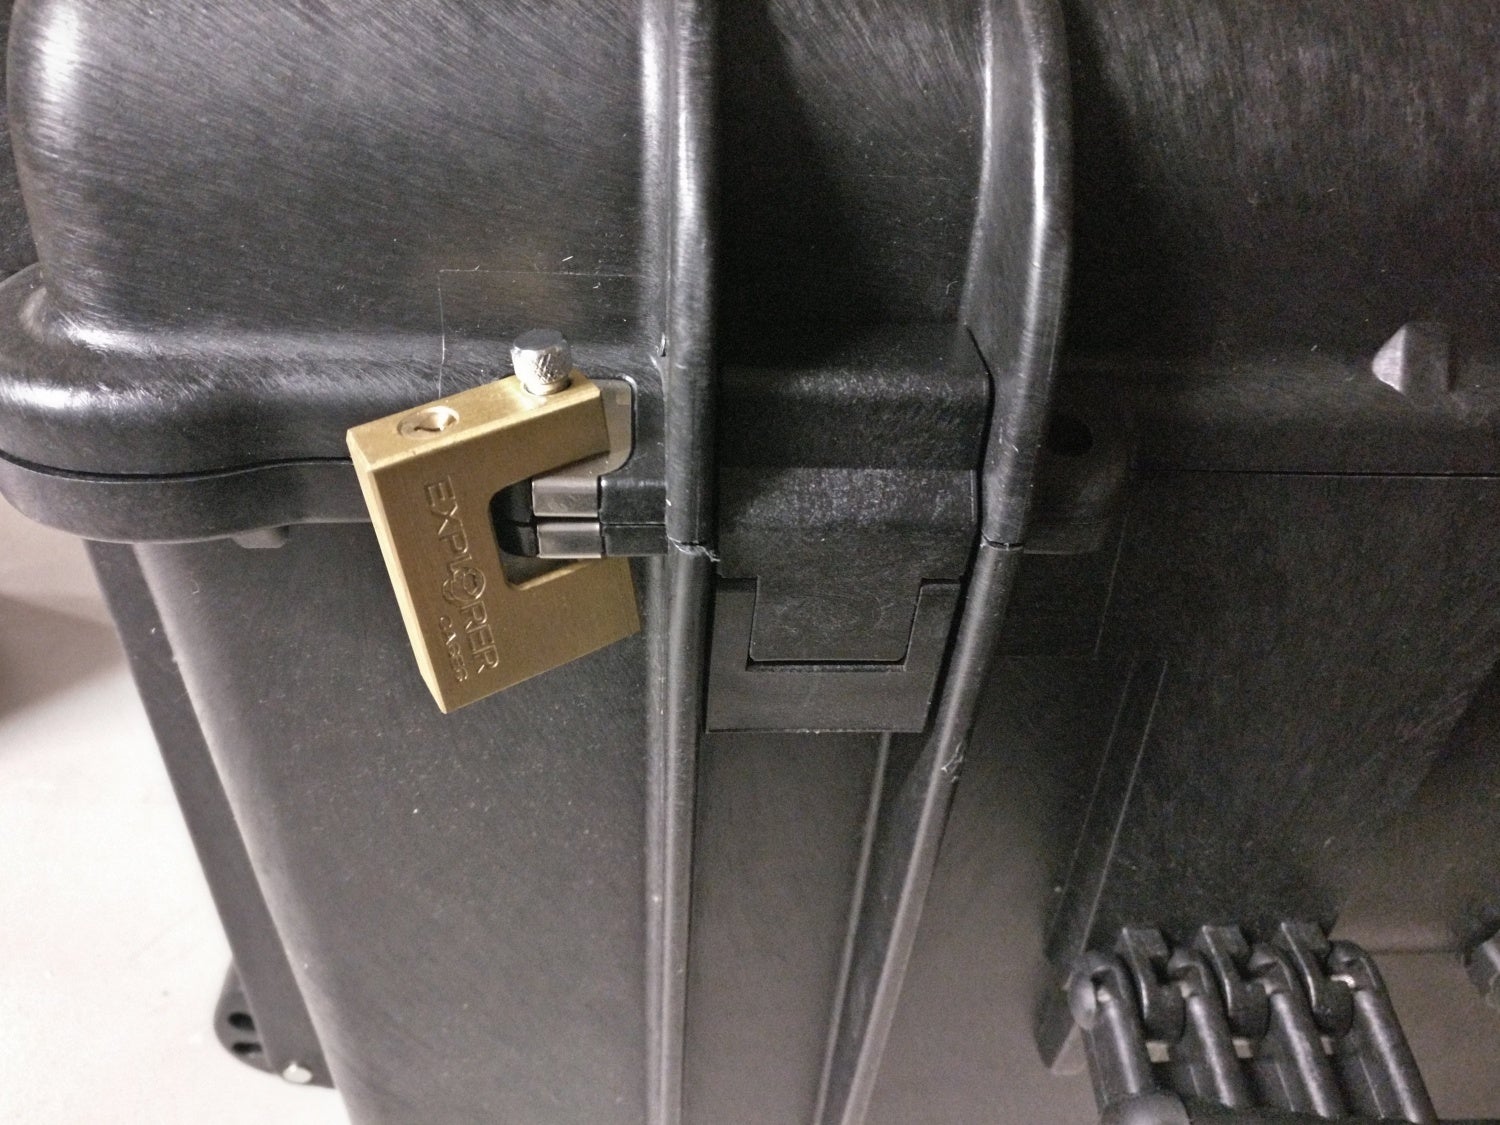 Brass keyed padlock affixed to metal hasp